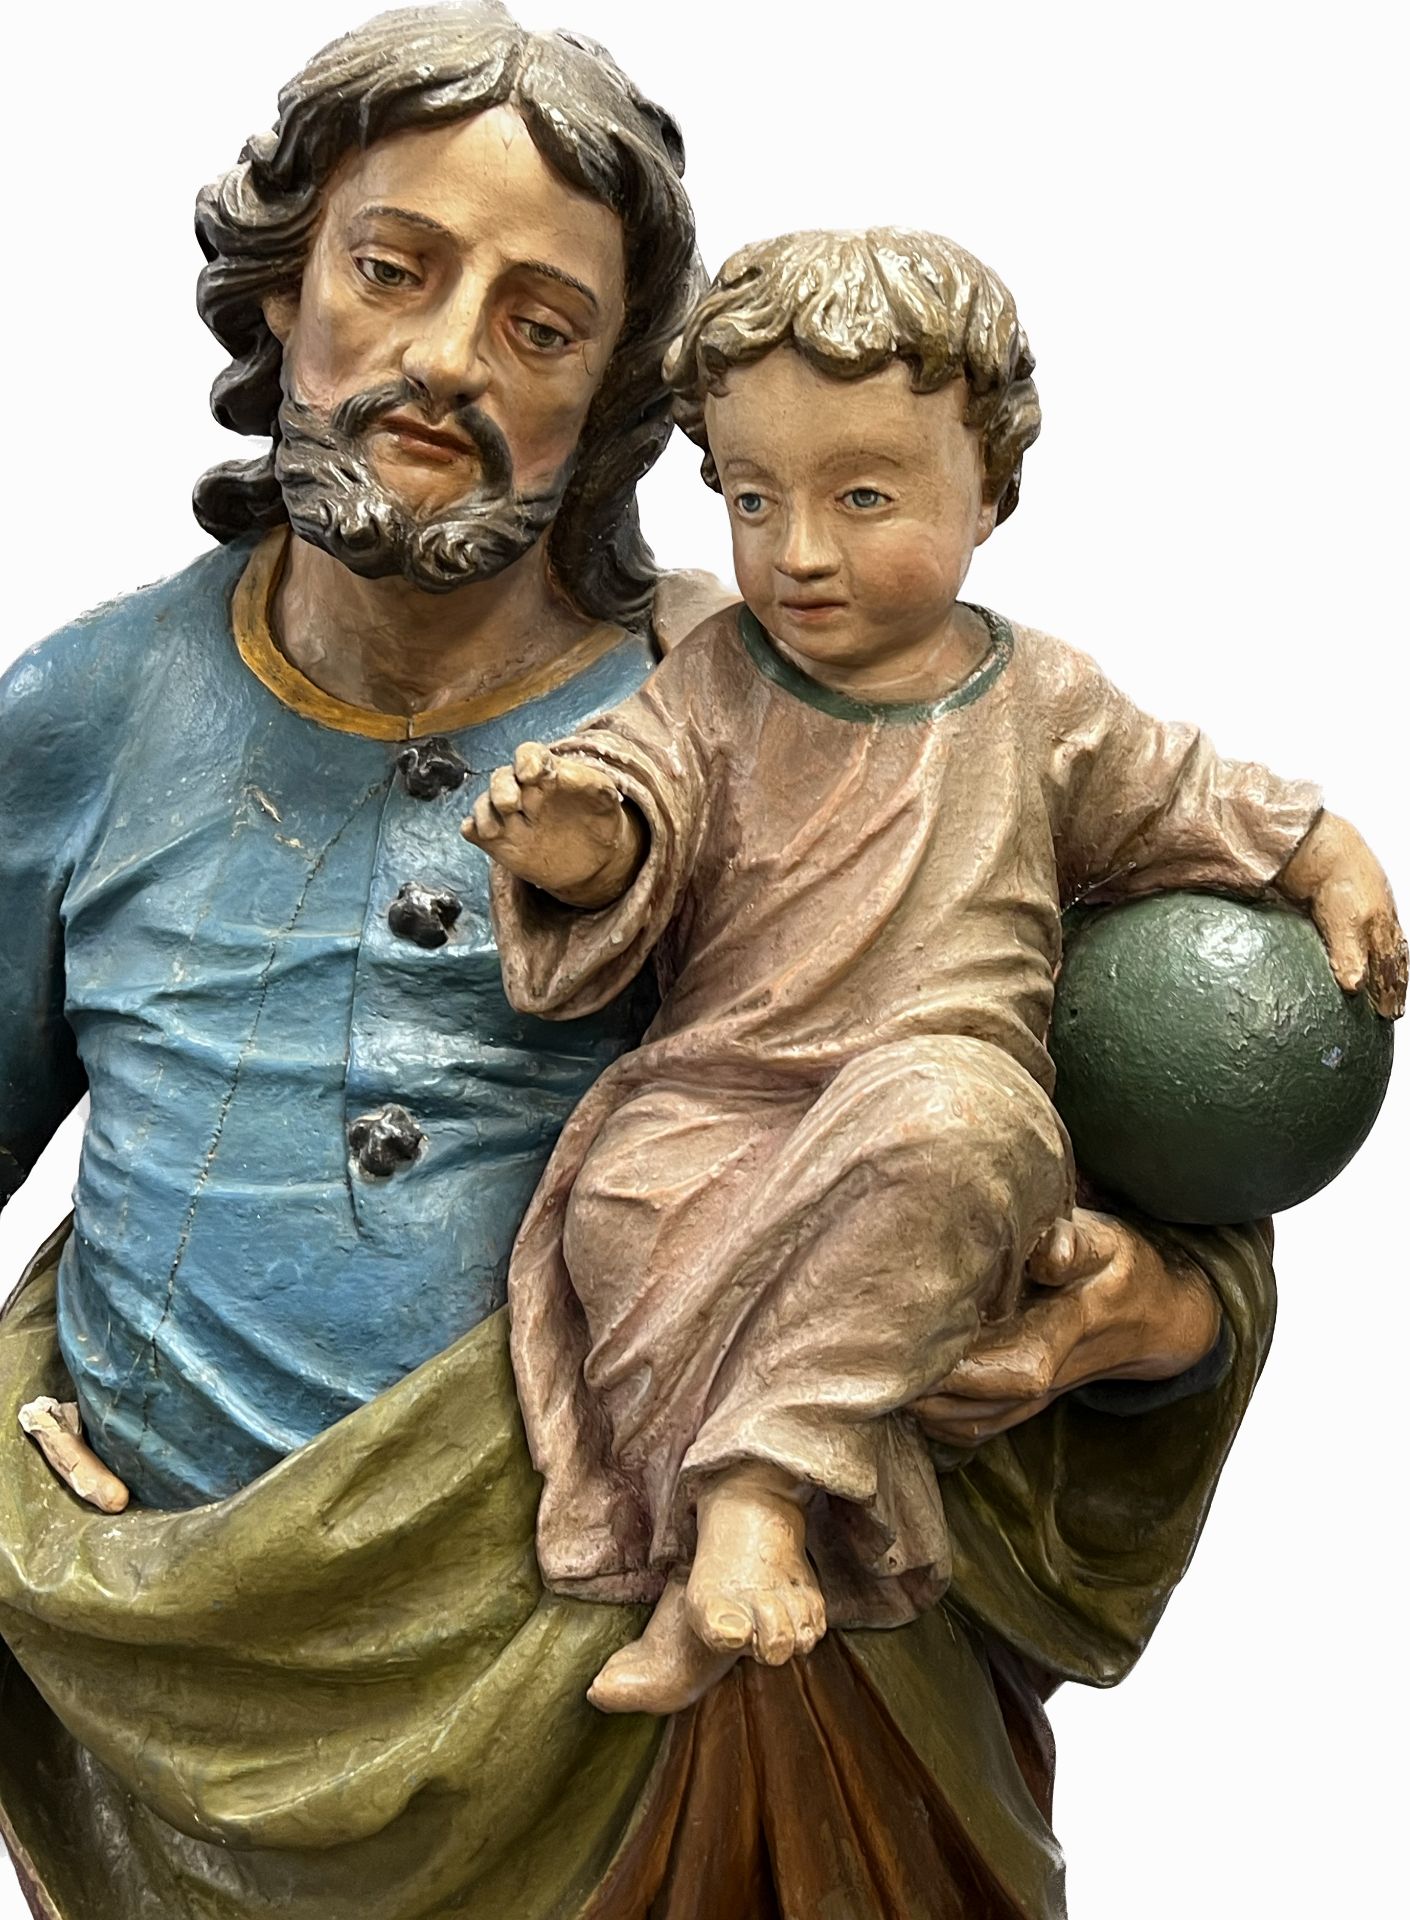 Lebensgroße Skulptur. Hl. Josef mit Christusknaben. Wohl 17. / 18. Jahrhundert. Süddeutschland. - Bild 3 aus 20